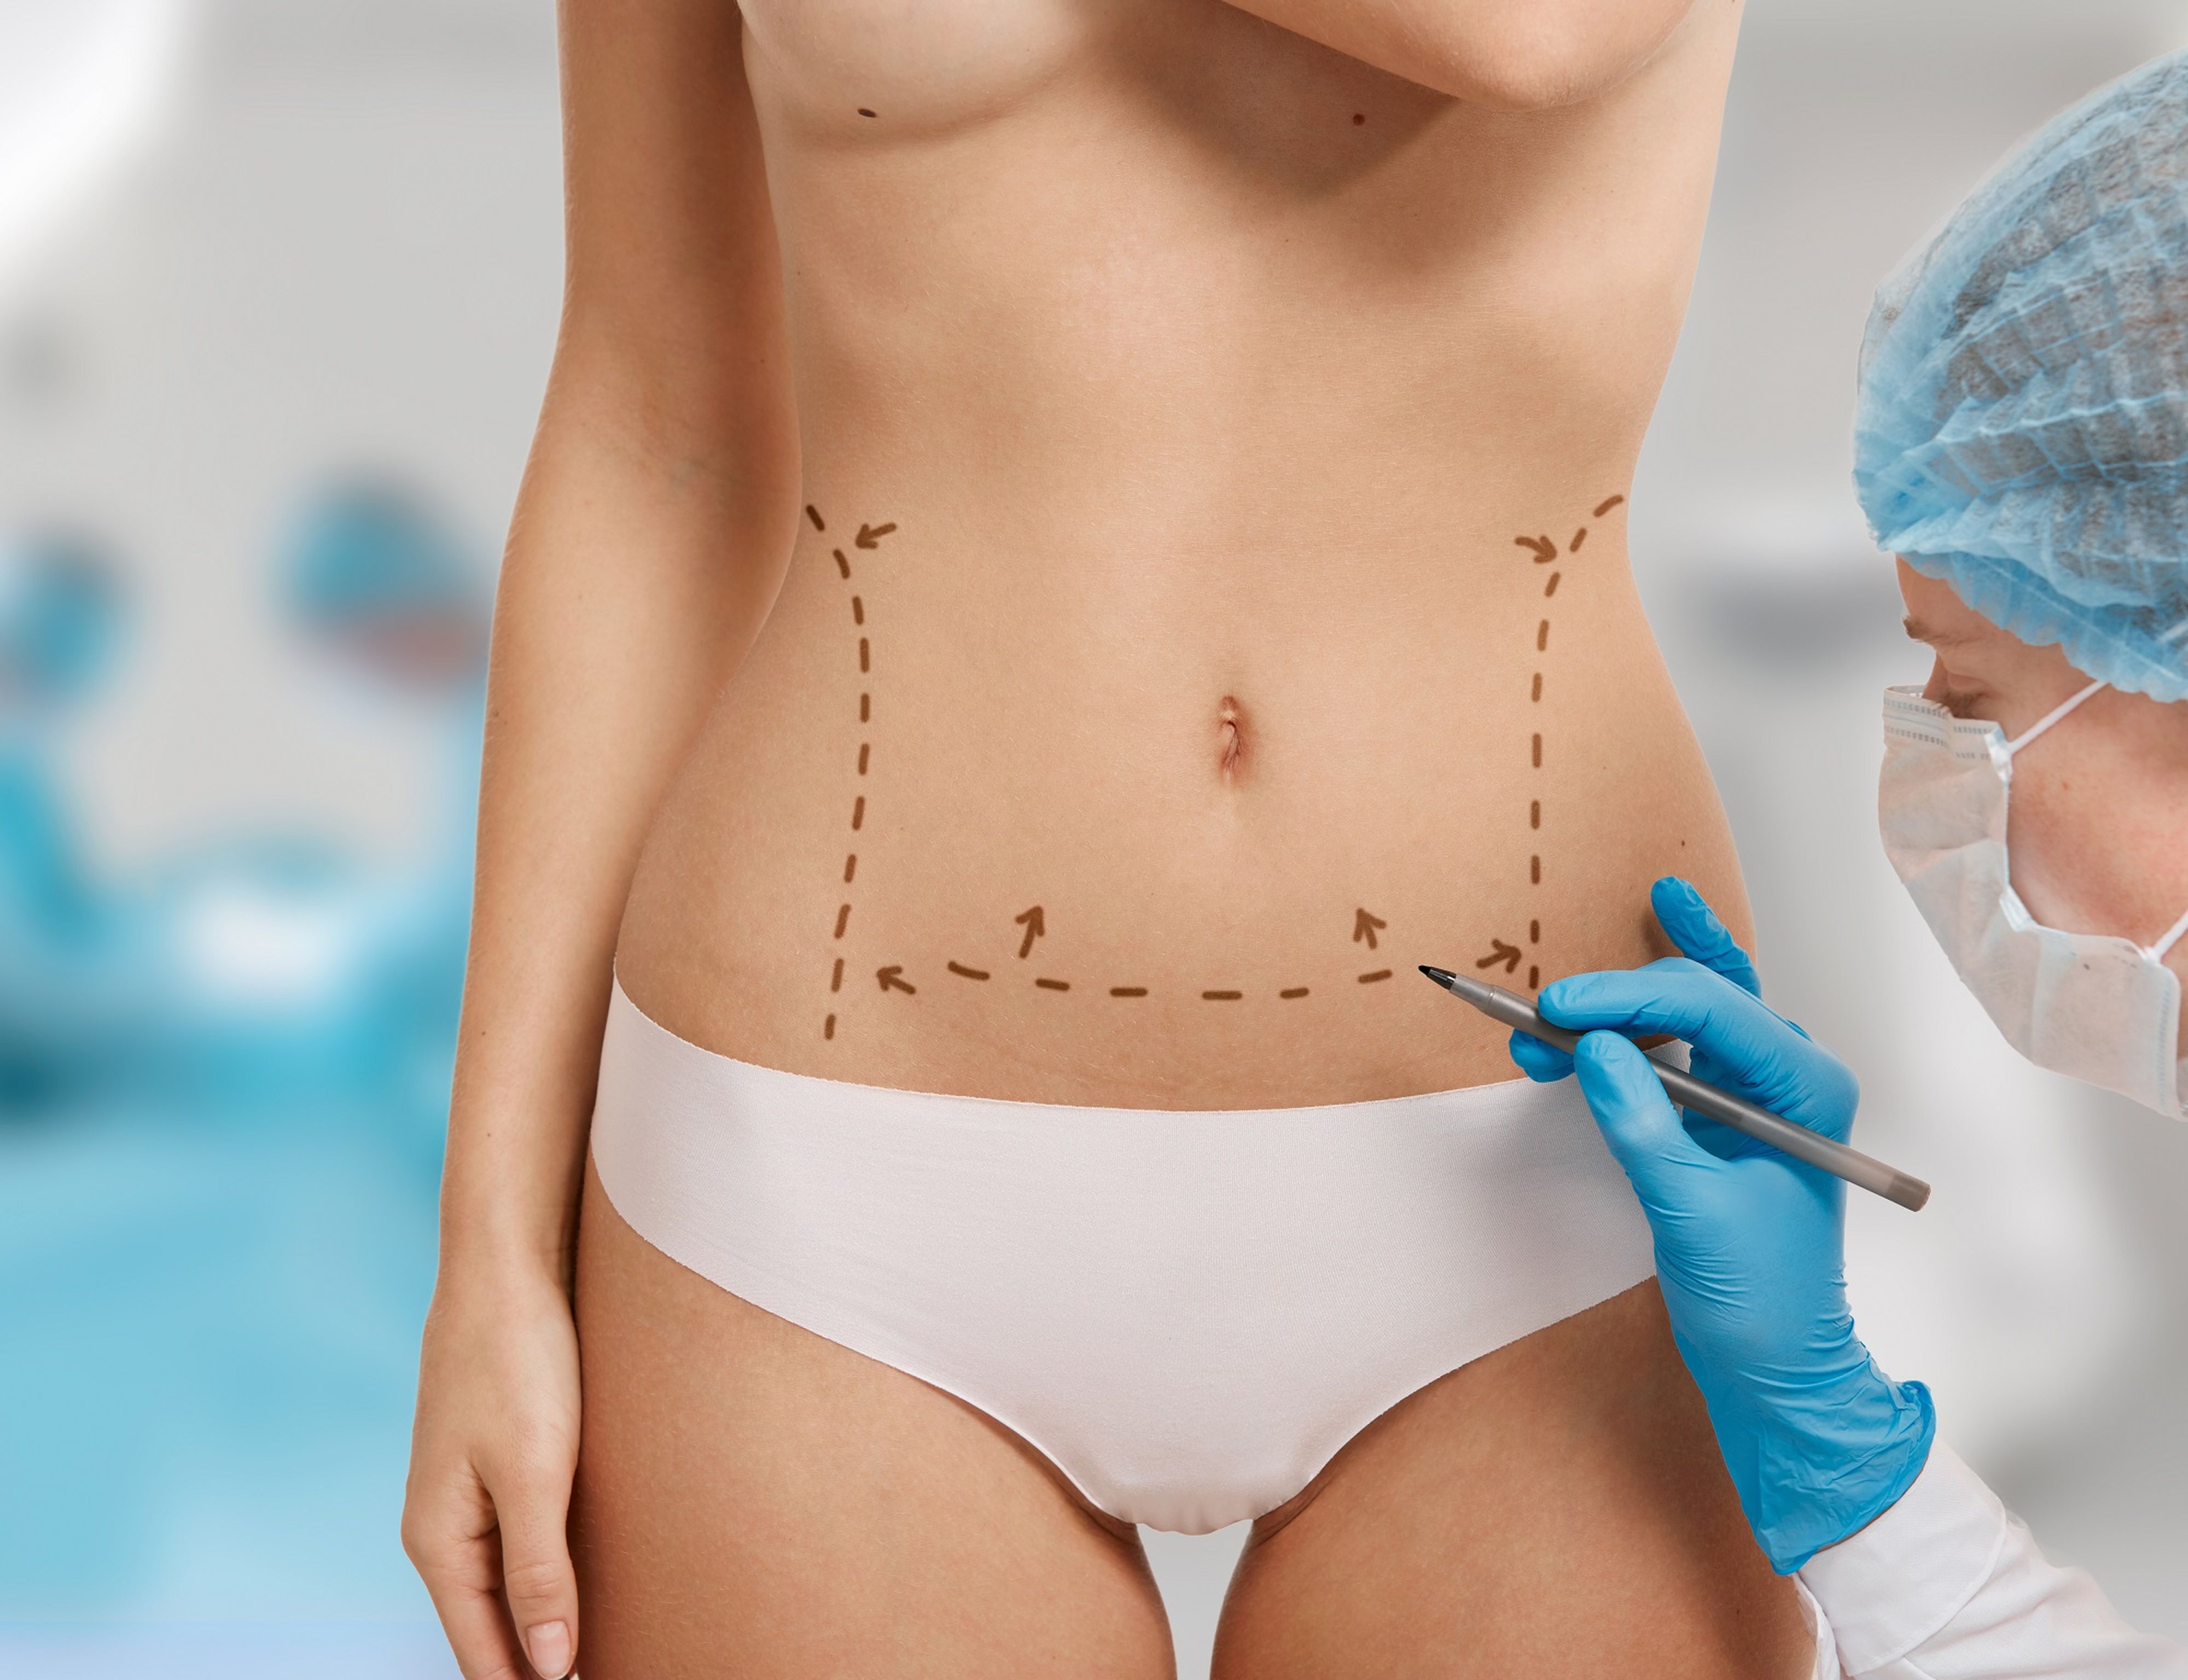 Schönheitschirurgin zeichnet gestrichelte Linien auf Bauch einer Patientin